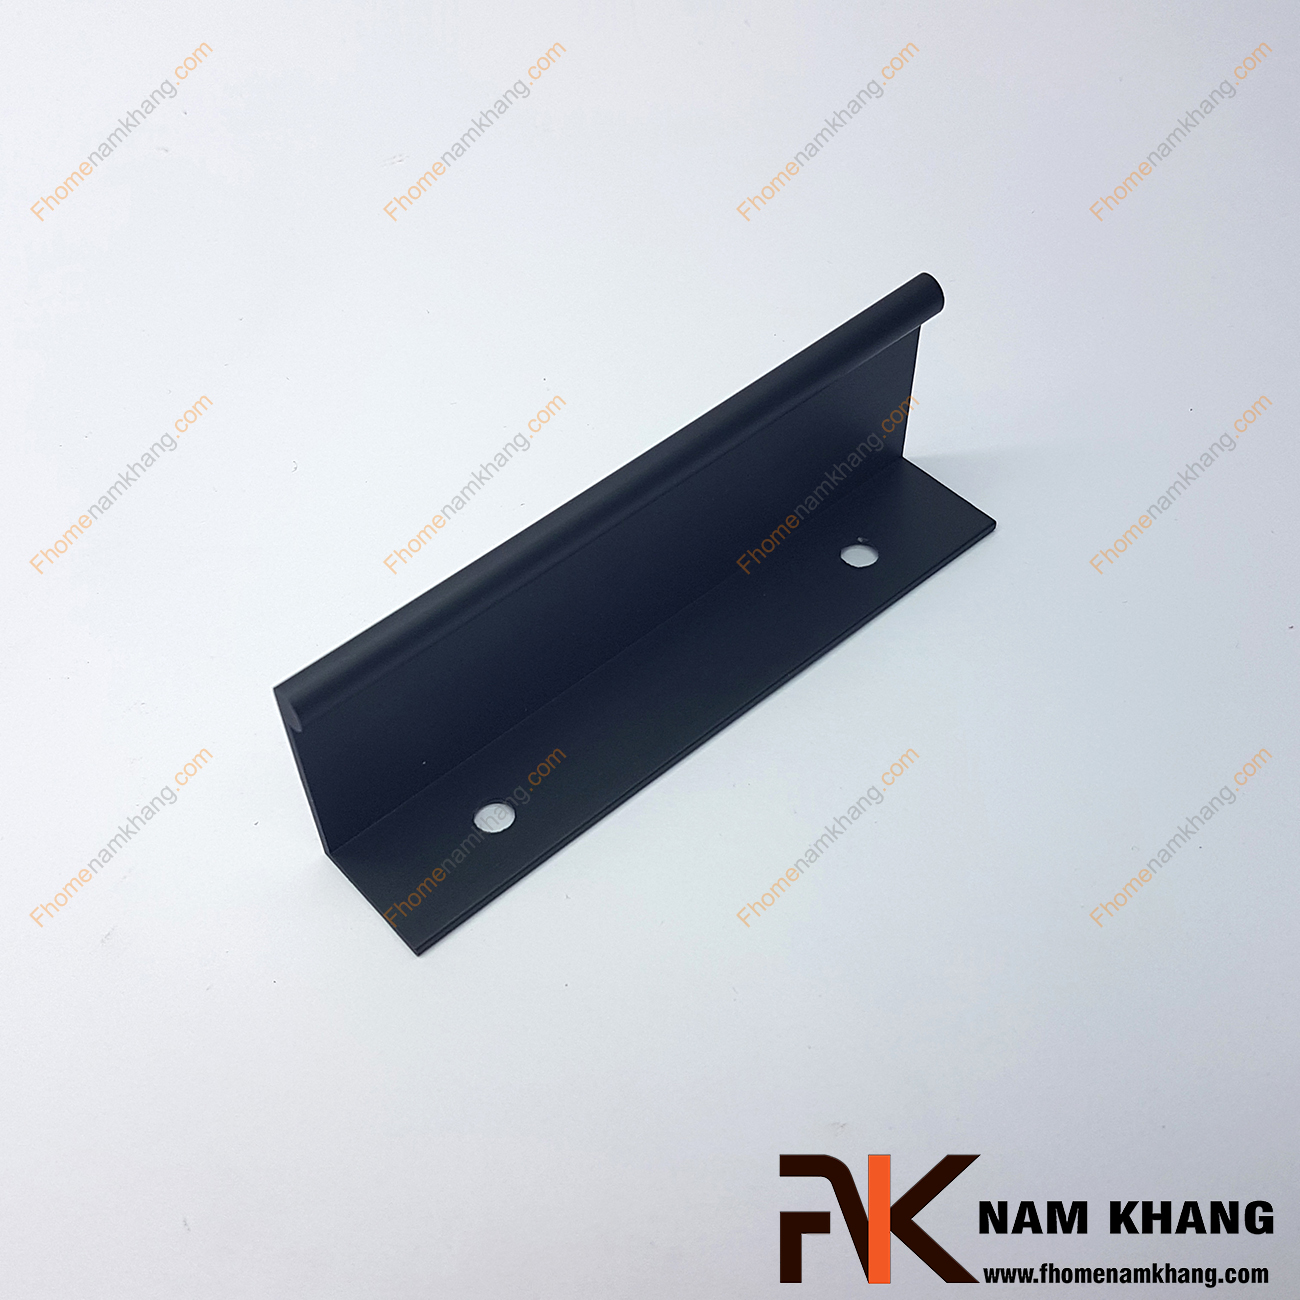 Tay nắm tủ dạng thanh dài màu đen NK312-D rất đặc trưng bởi thiết kế thanh mỏng dạng chữ V. Với bề dày của thanh là 2mm và được sản xuất từ vật liệu cao cấp